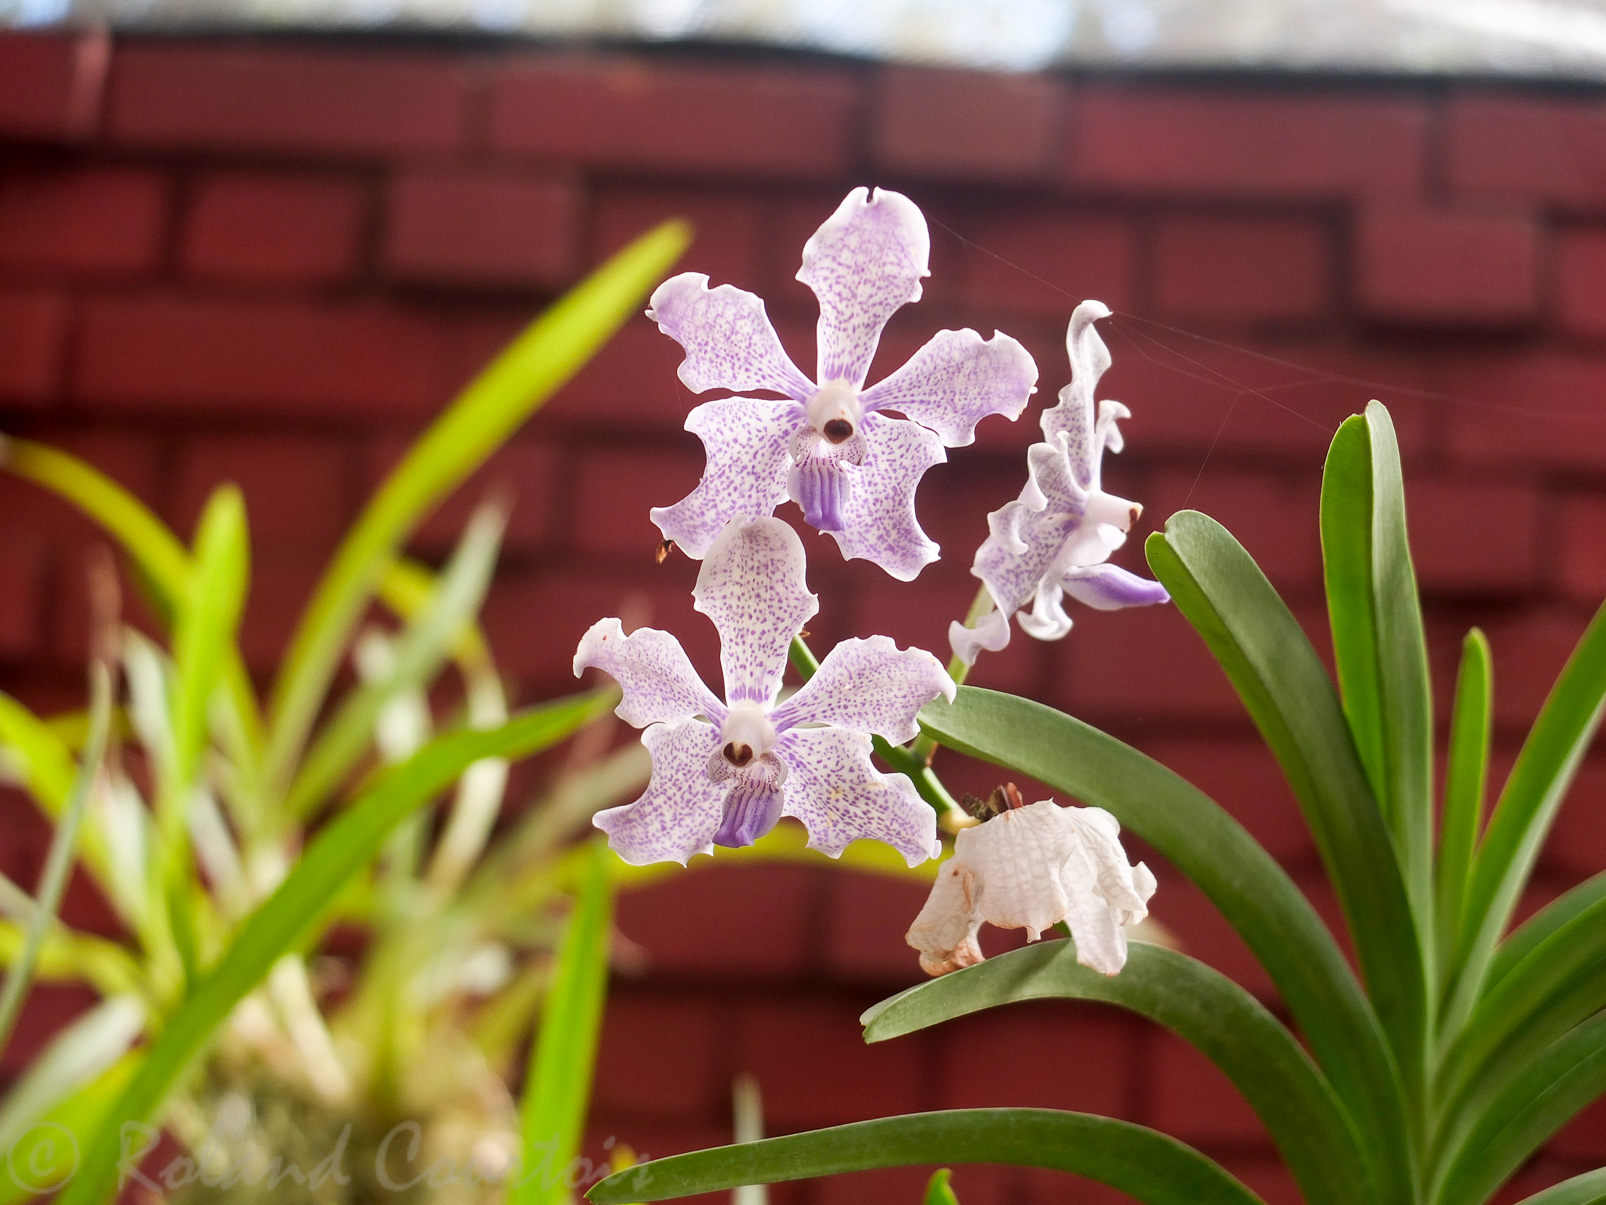 Jardin botanique de Peradeniya. Possède une extraordinaire collection d'orchidées.